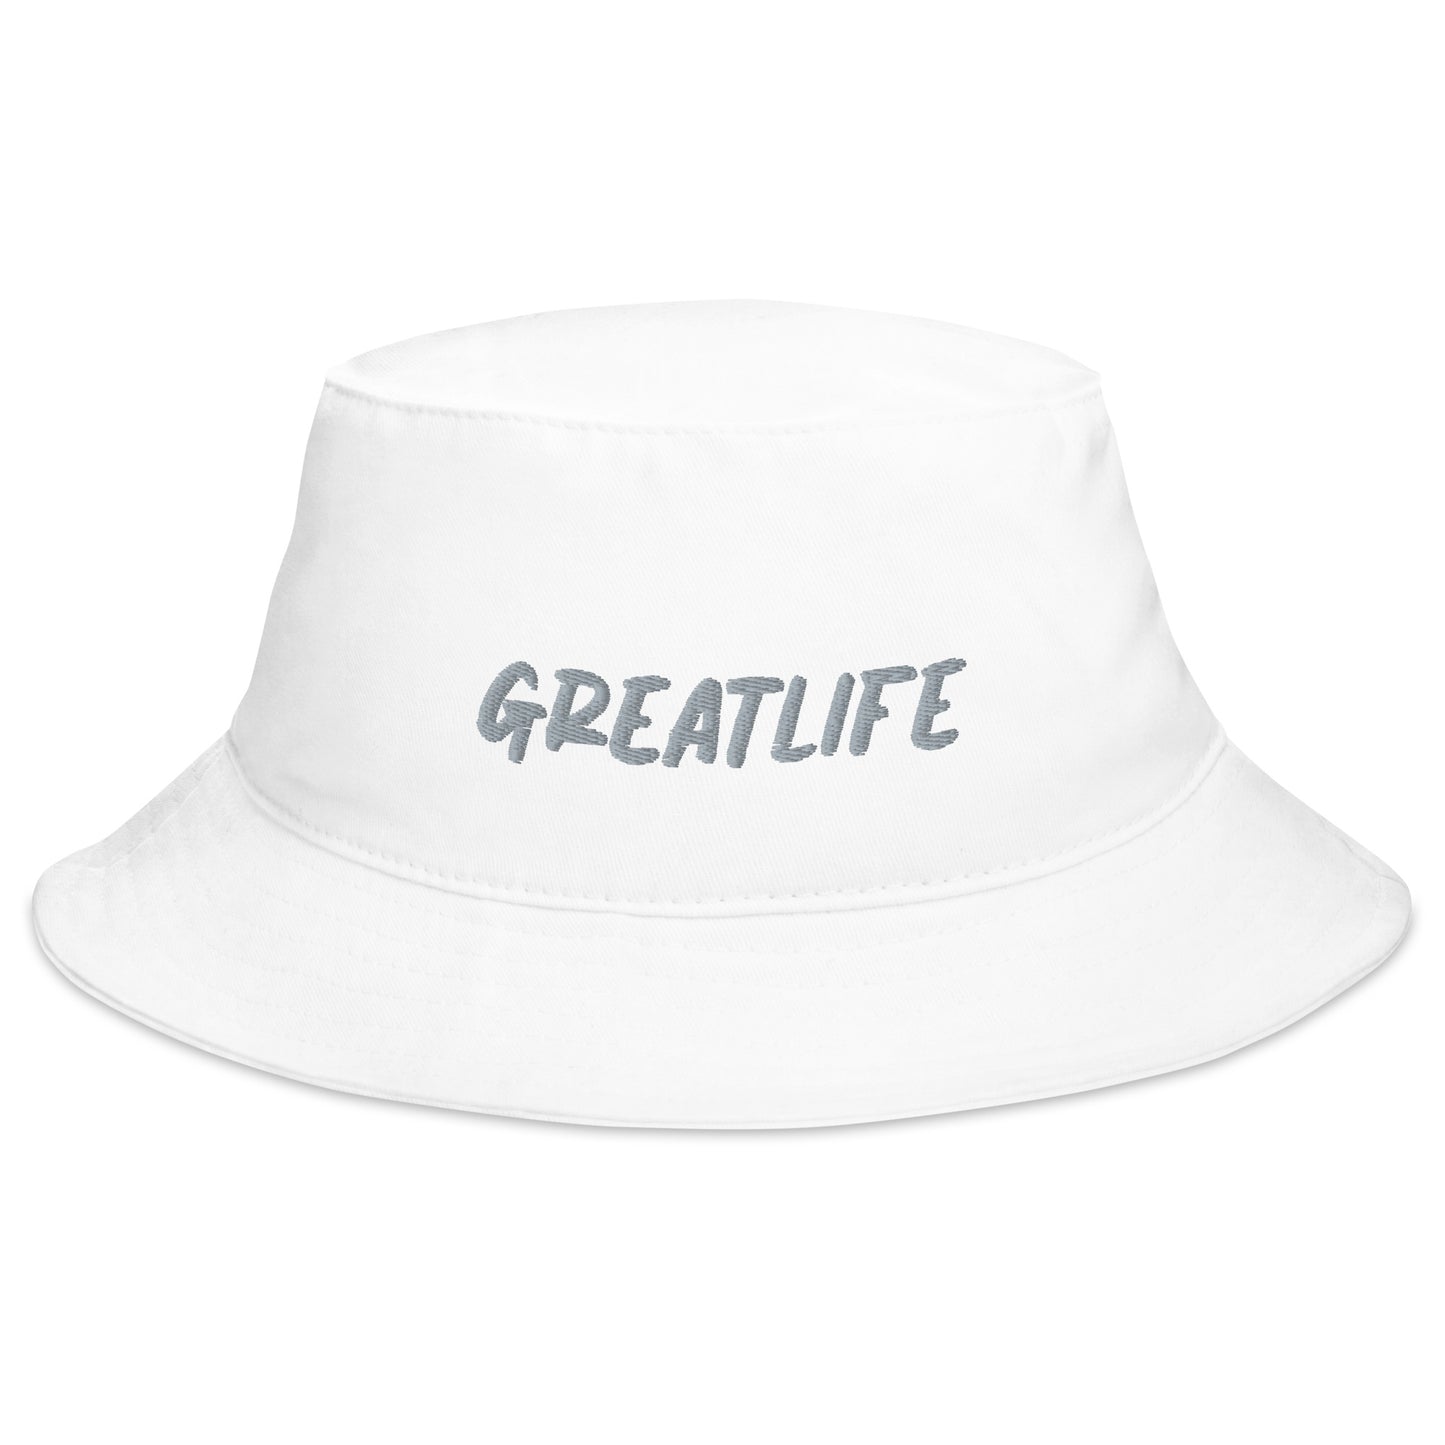 GREATLIFE Bucket Hat